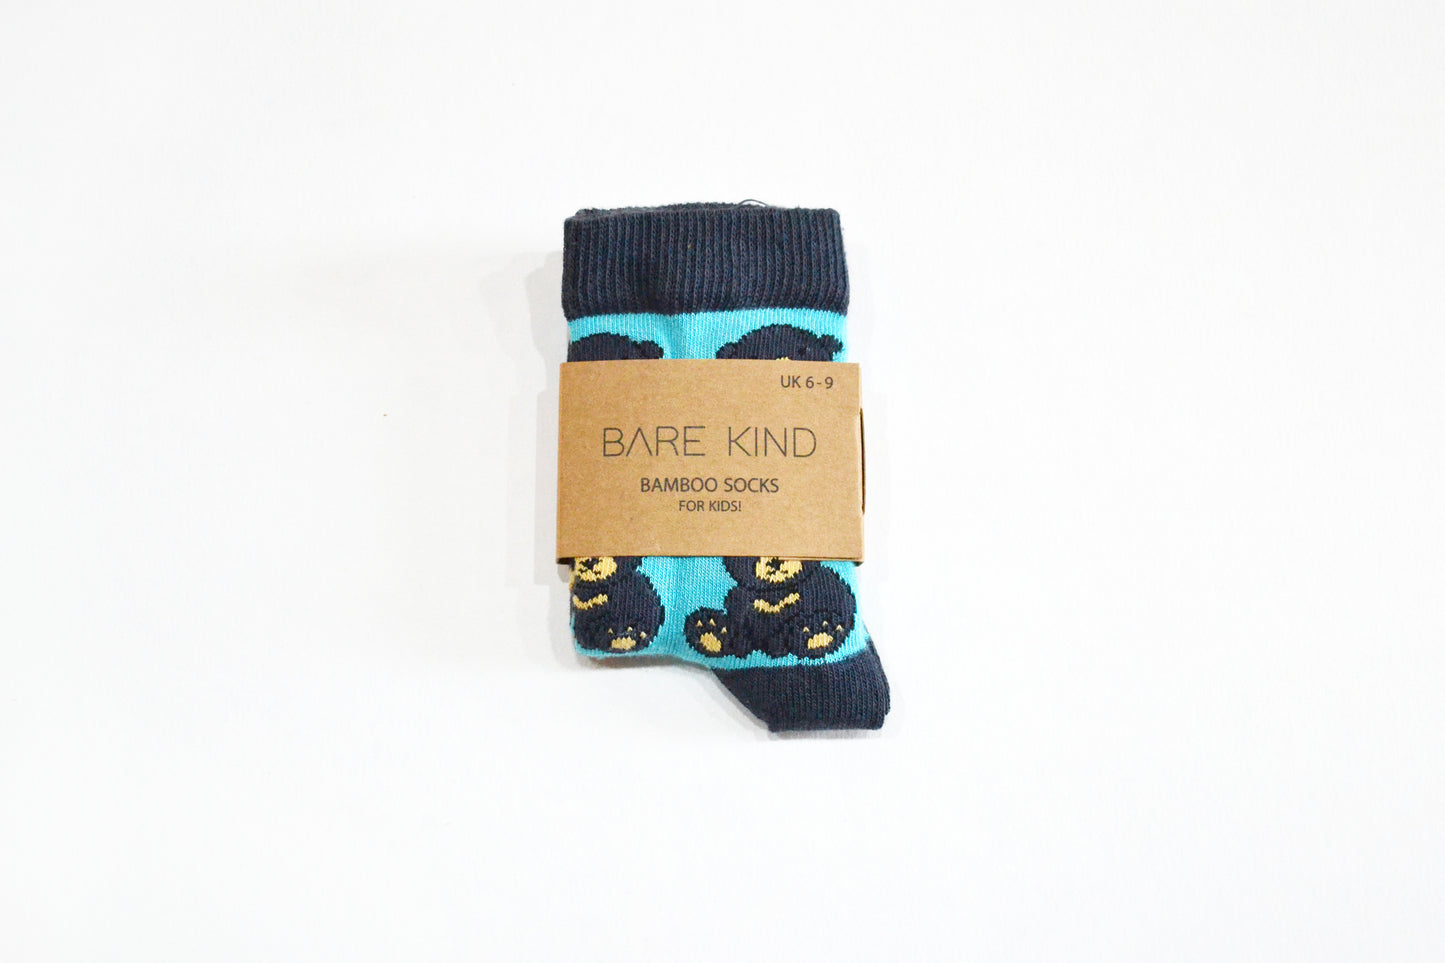 Bare Kind Bamboo Children's Socks - Save the Sun Bears